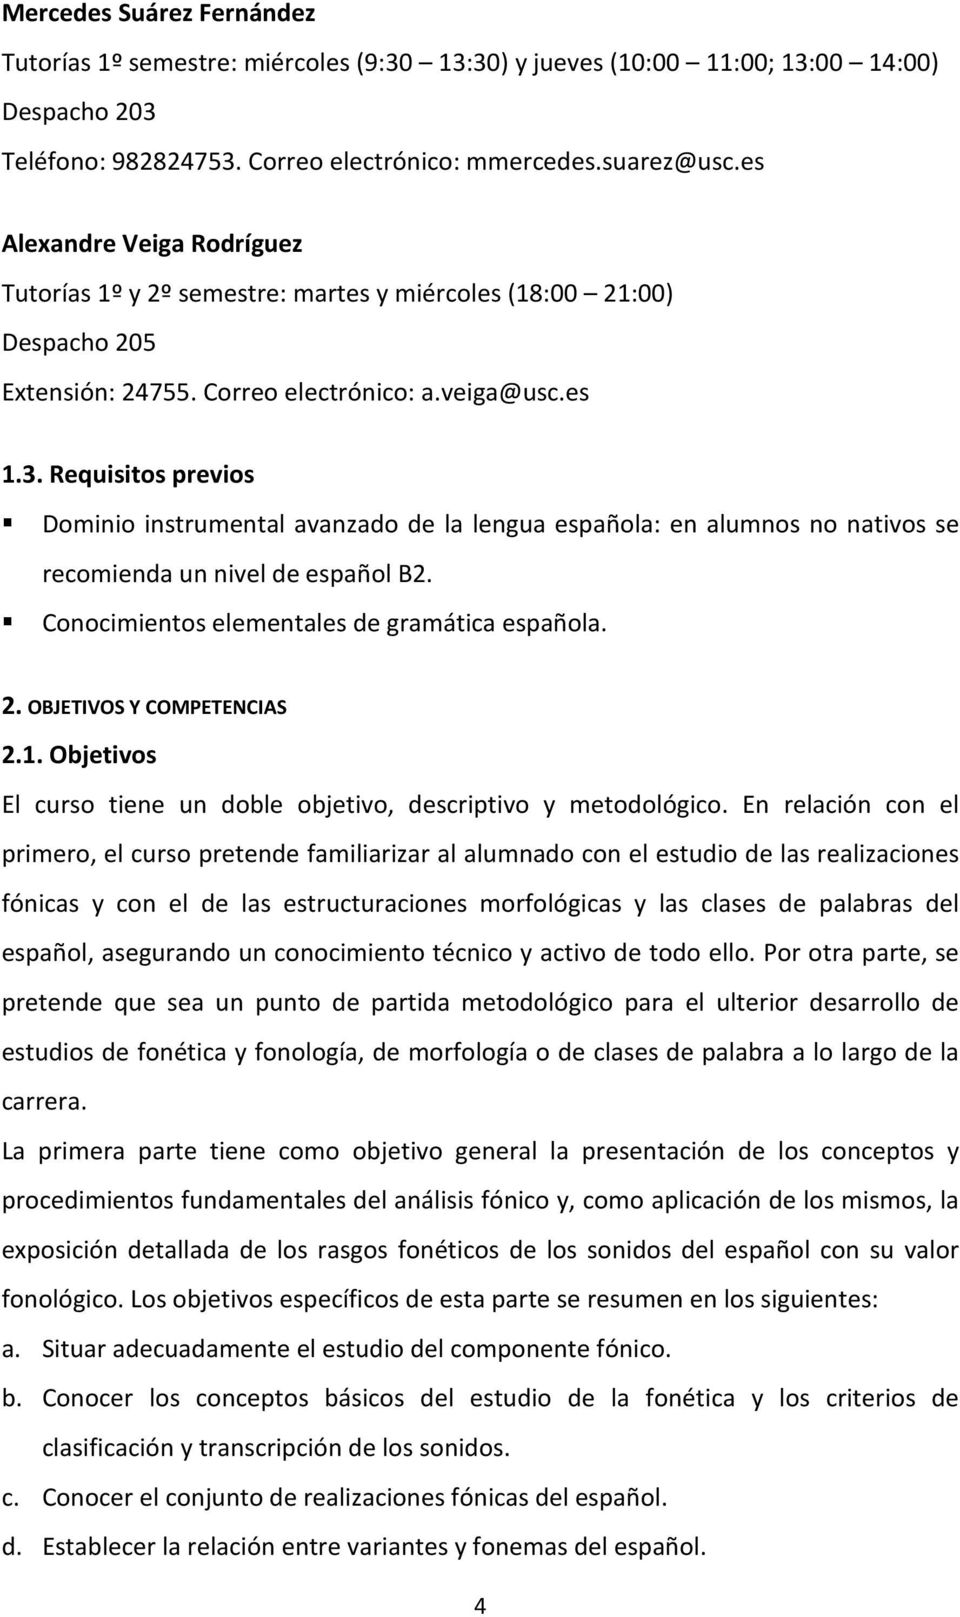 Requisitos previos Dominio instrumental avanzado de la lengua española: en alumnos no nativos se recomienda un nivel de español B2. Conocimientos elementales de gramática española. 2.